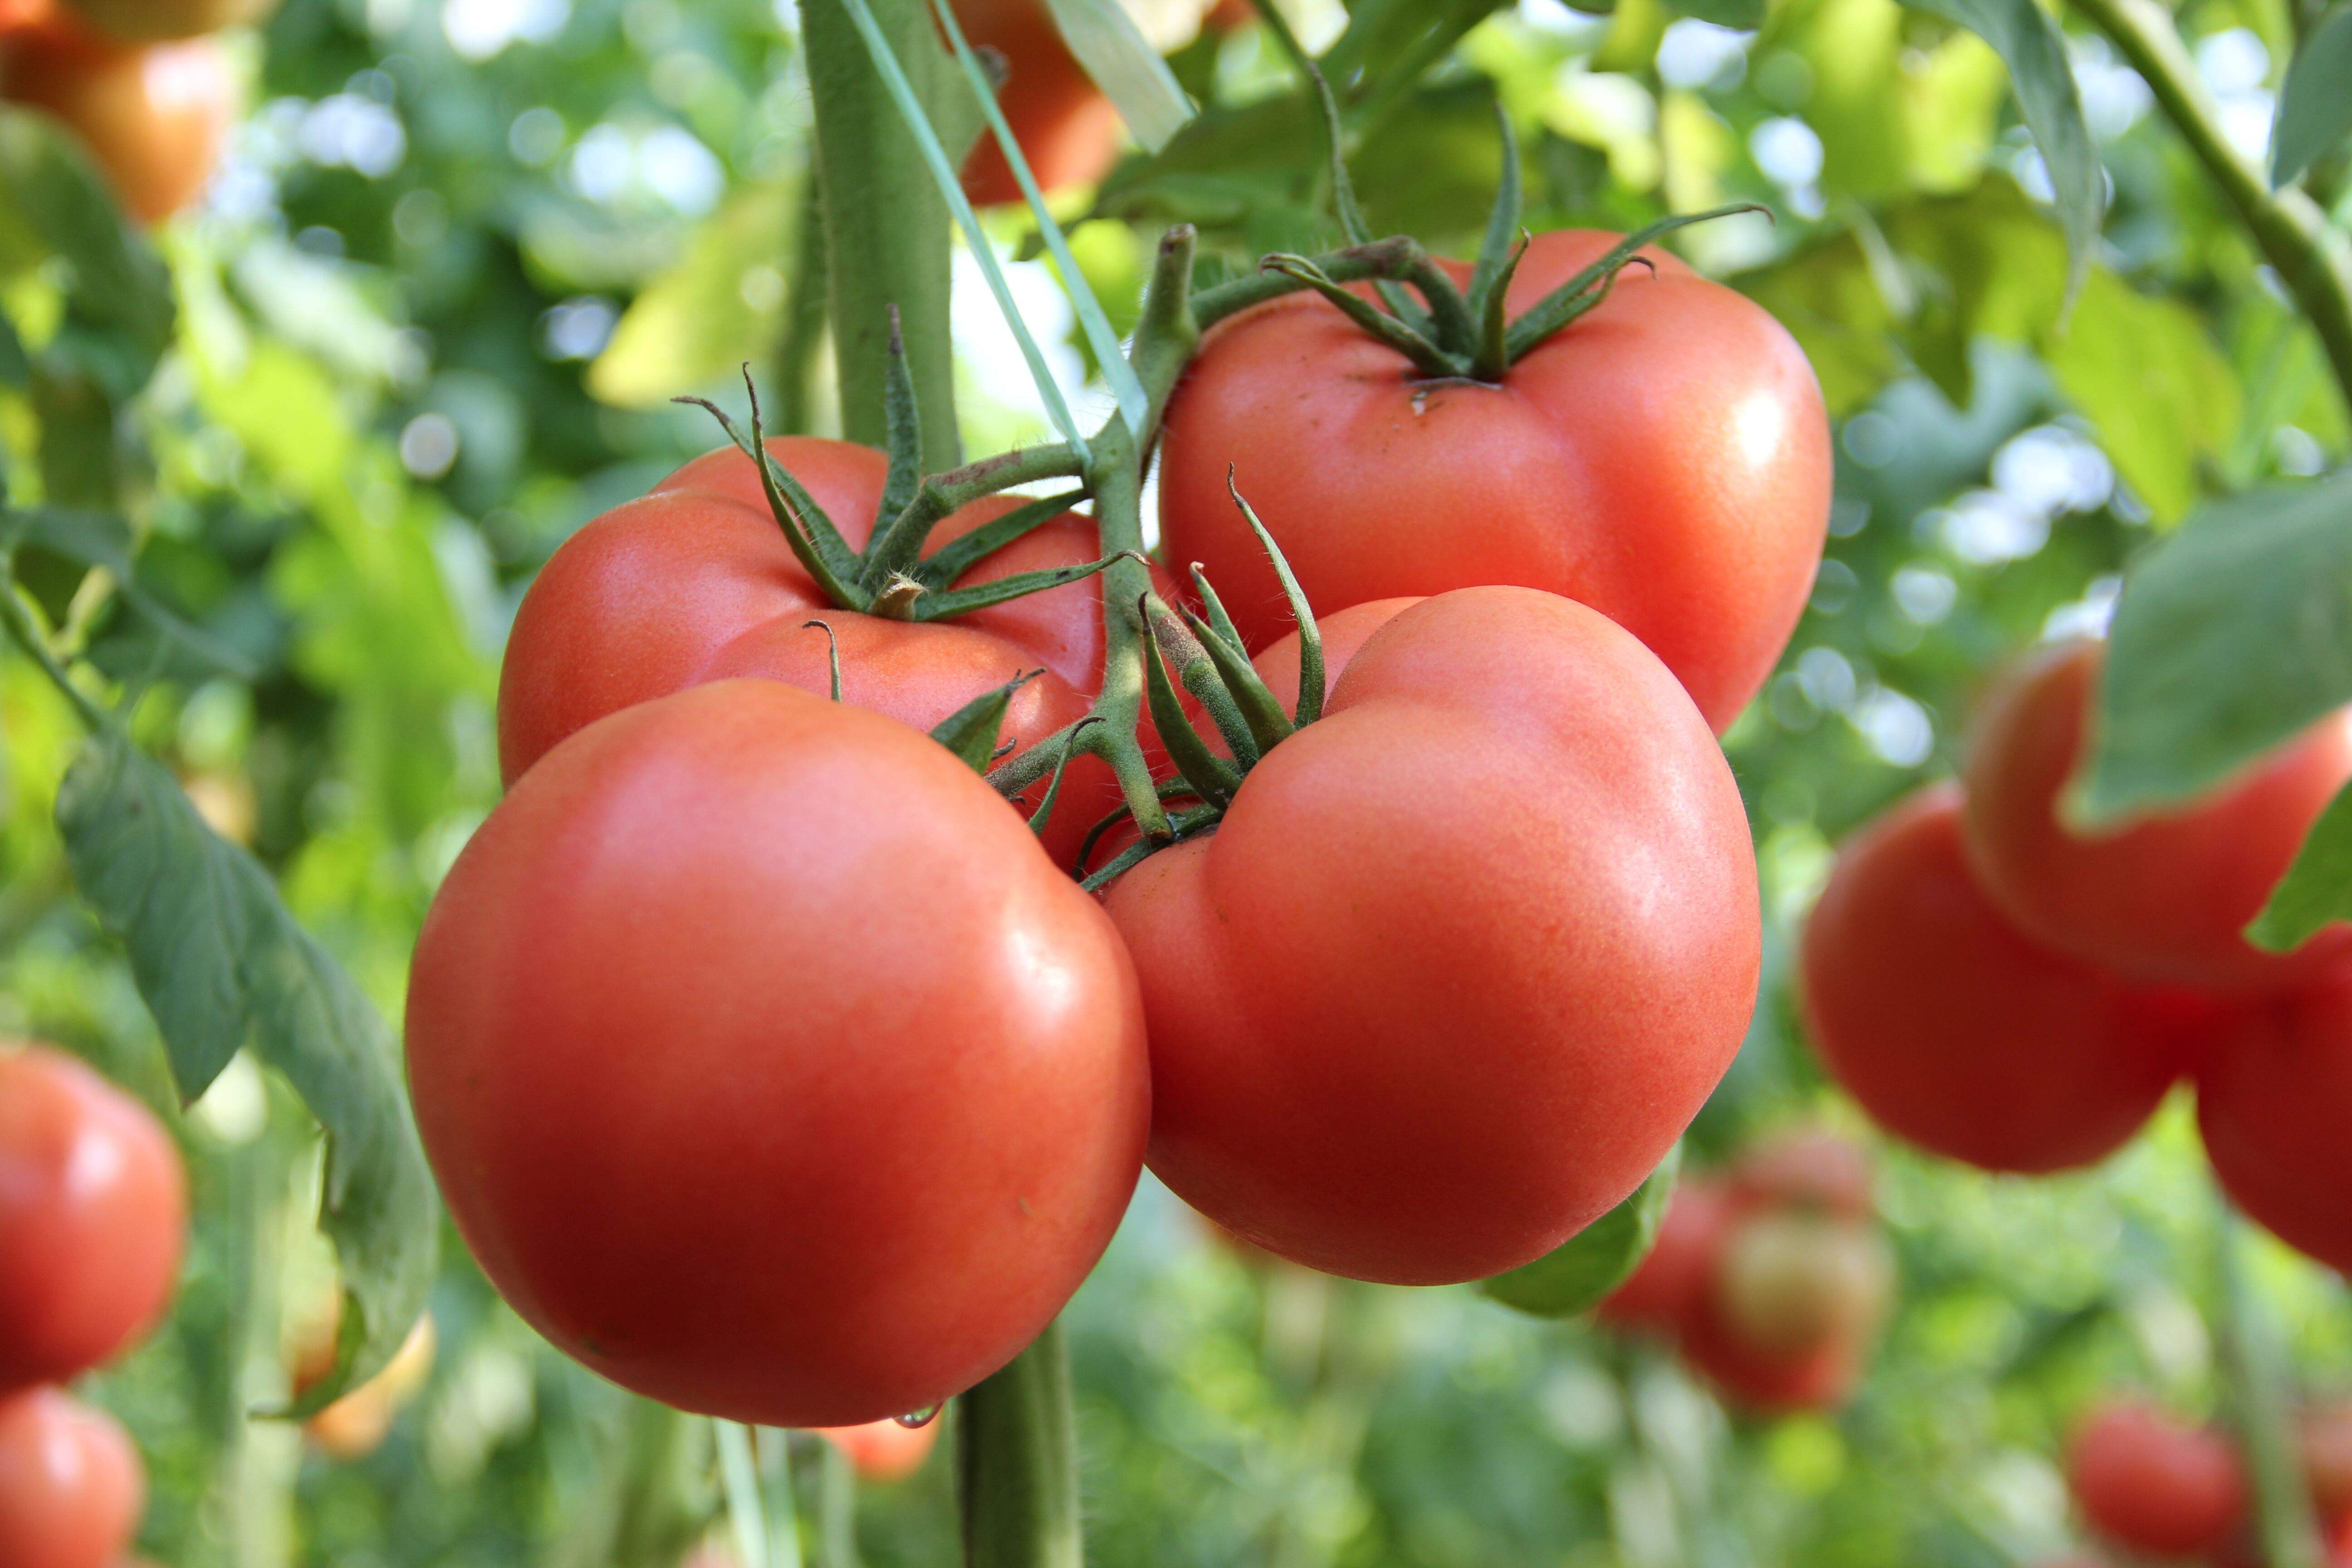 壳竞博jboapp对番茄和韭菜中有机磷类农药降解的生理调控作用